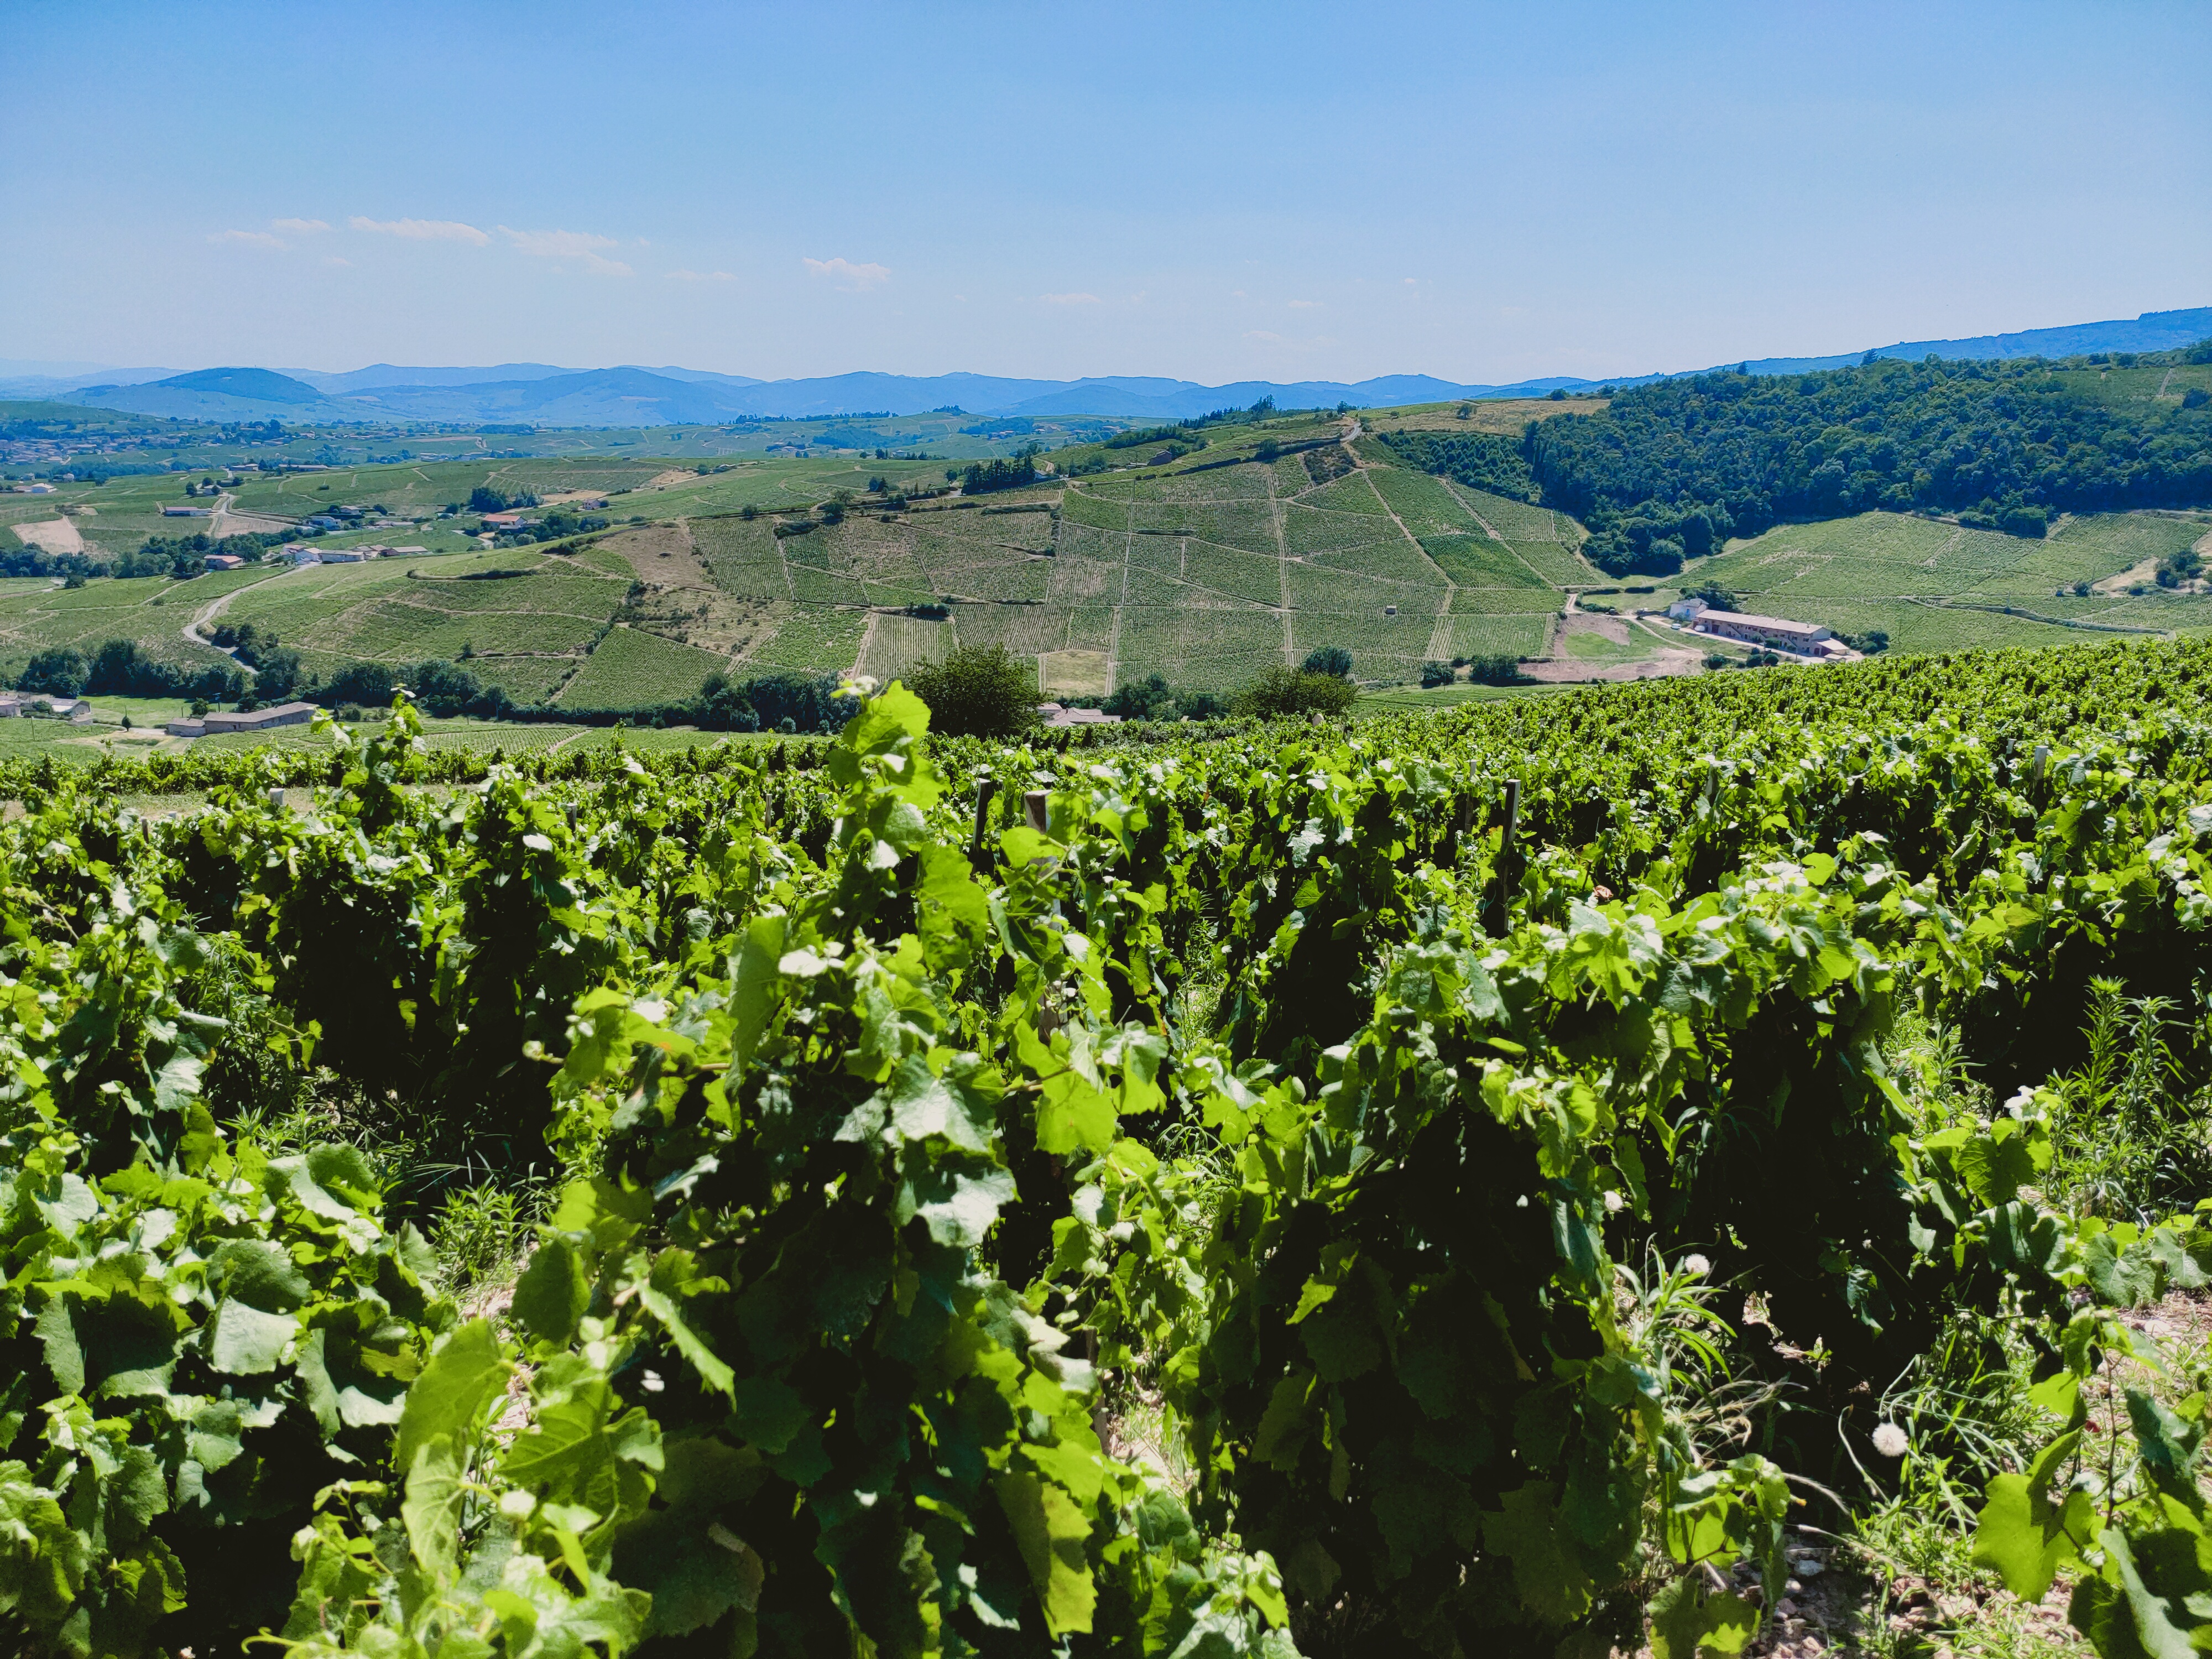 Les vignes de Fleurie depuis les hauteurs du domaine de la Madone - Crédit photo : Yoann Palej